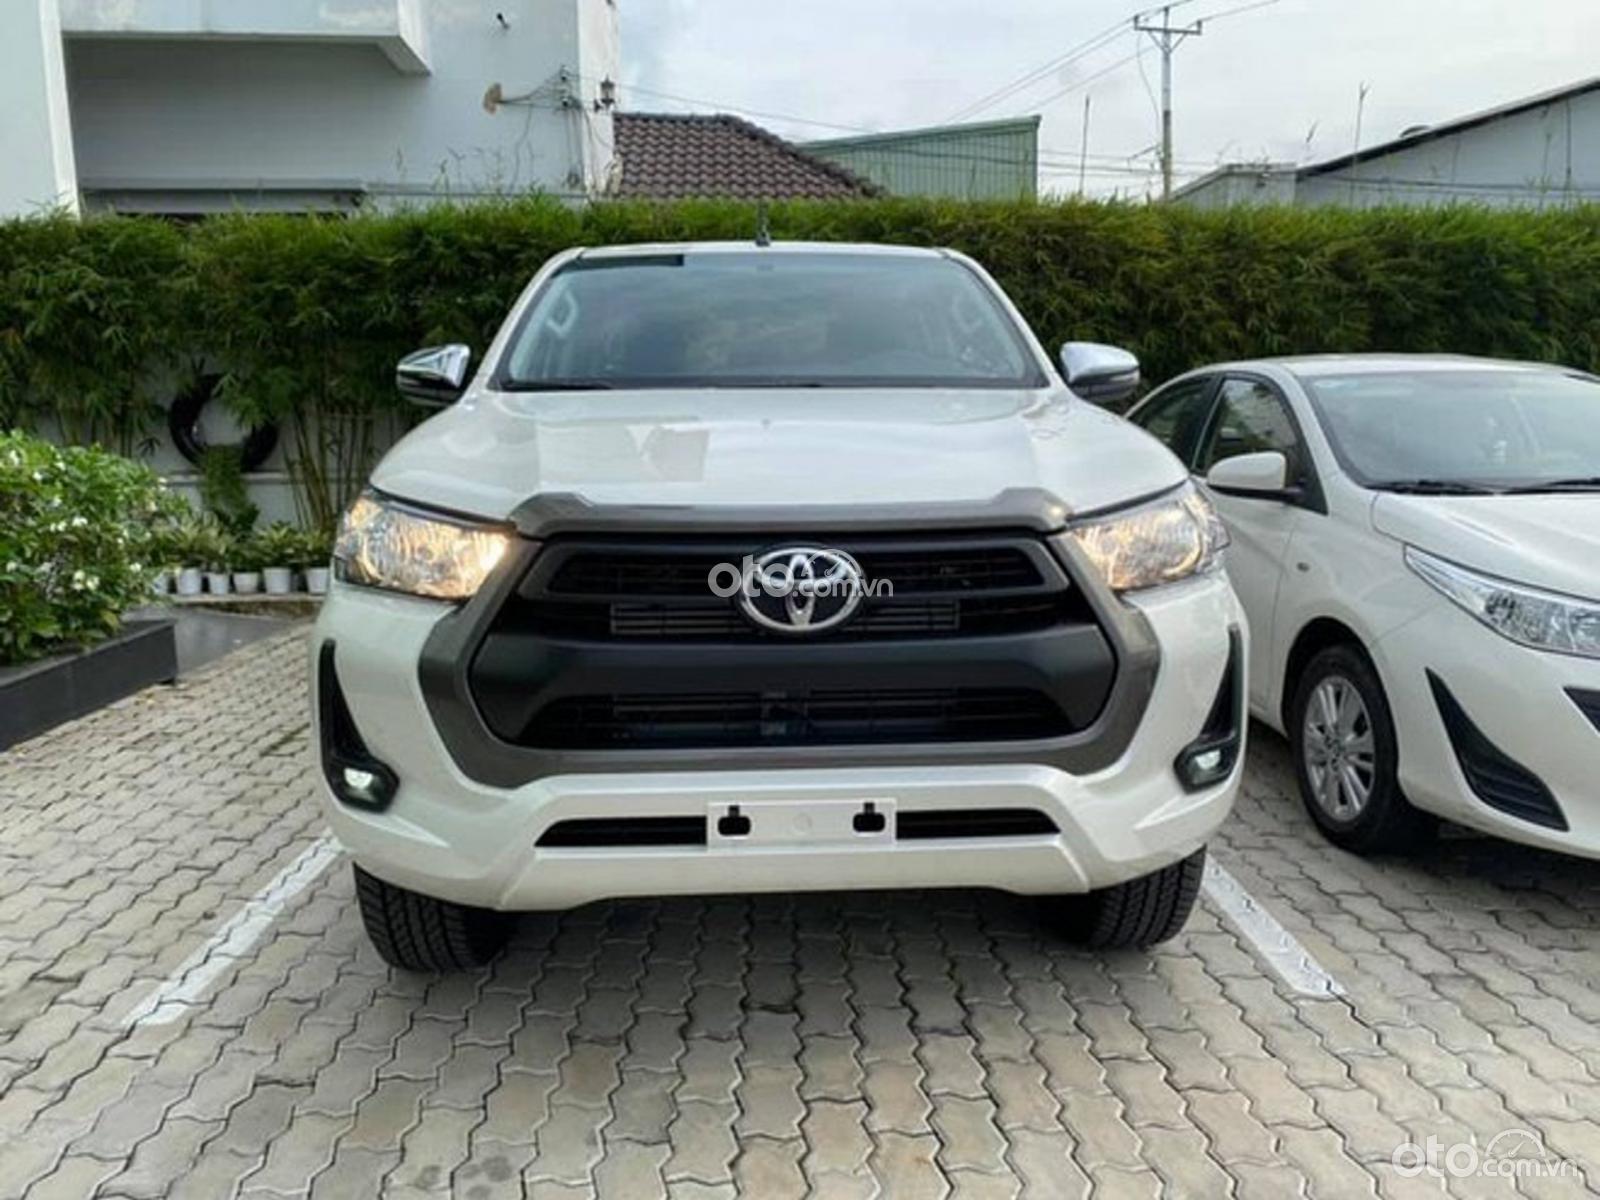 Toyota Hilux nhập khẩu chỉ 220tr nhận xe - hỗ trợ gói phụ kiện chính hãng - góp lãi suất thấp - giao xe tận nhà
